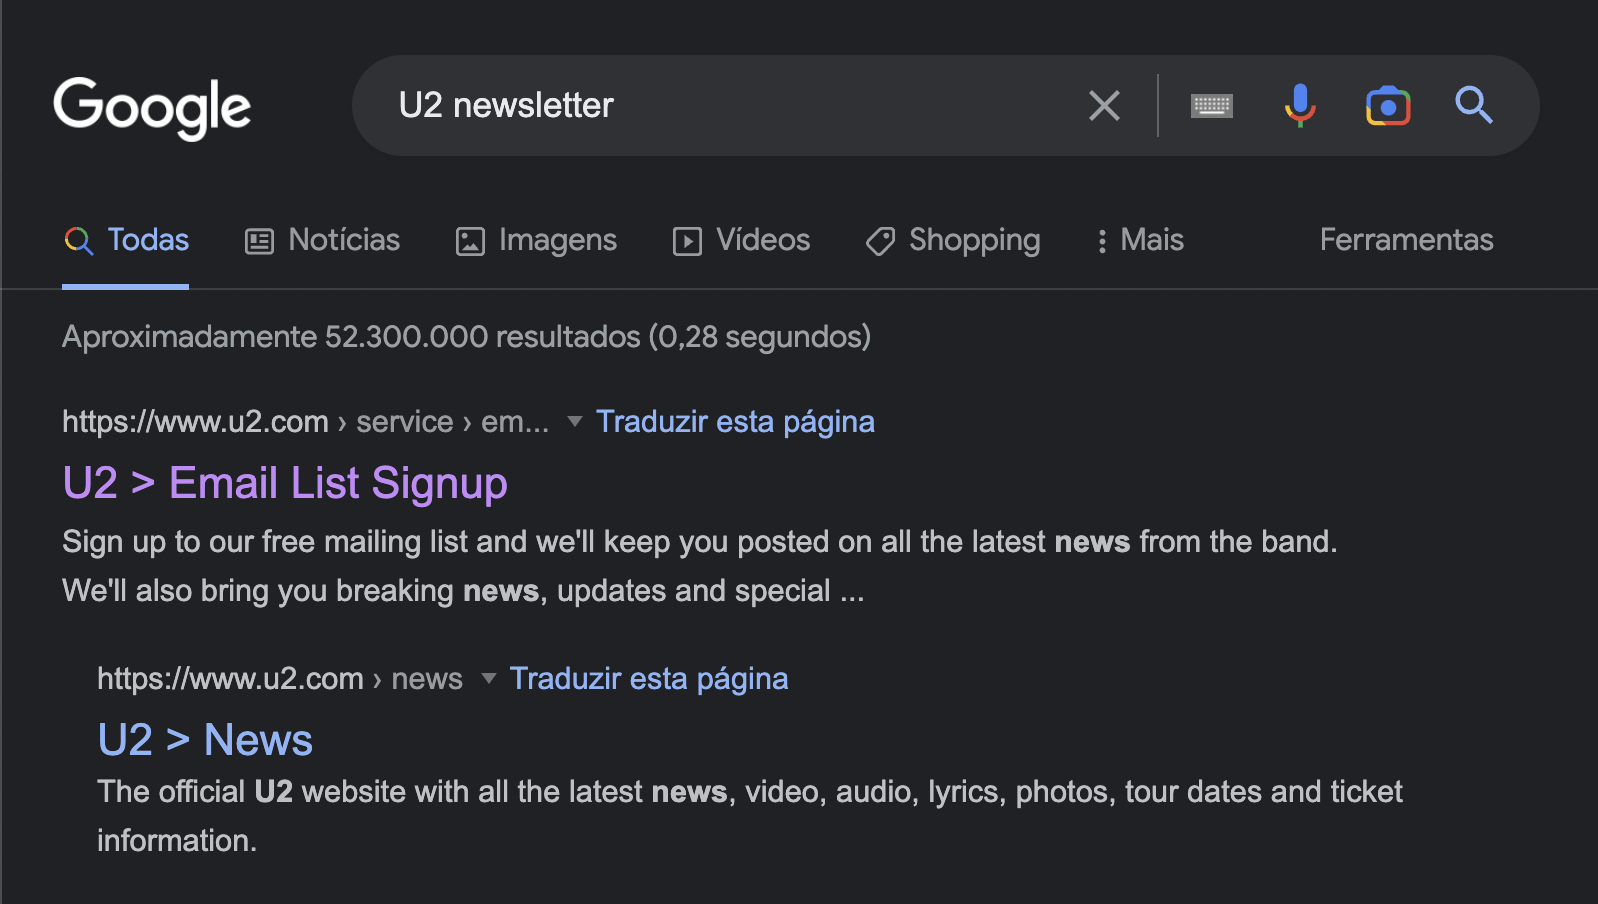 Resultados de uma busca no Google por "U2 Newsletter"